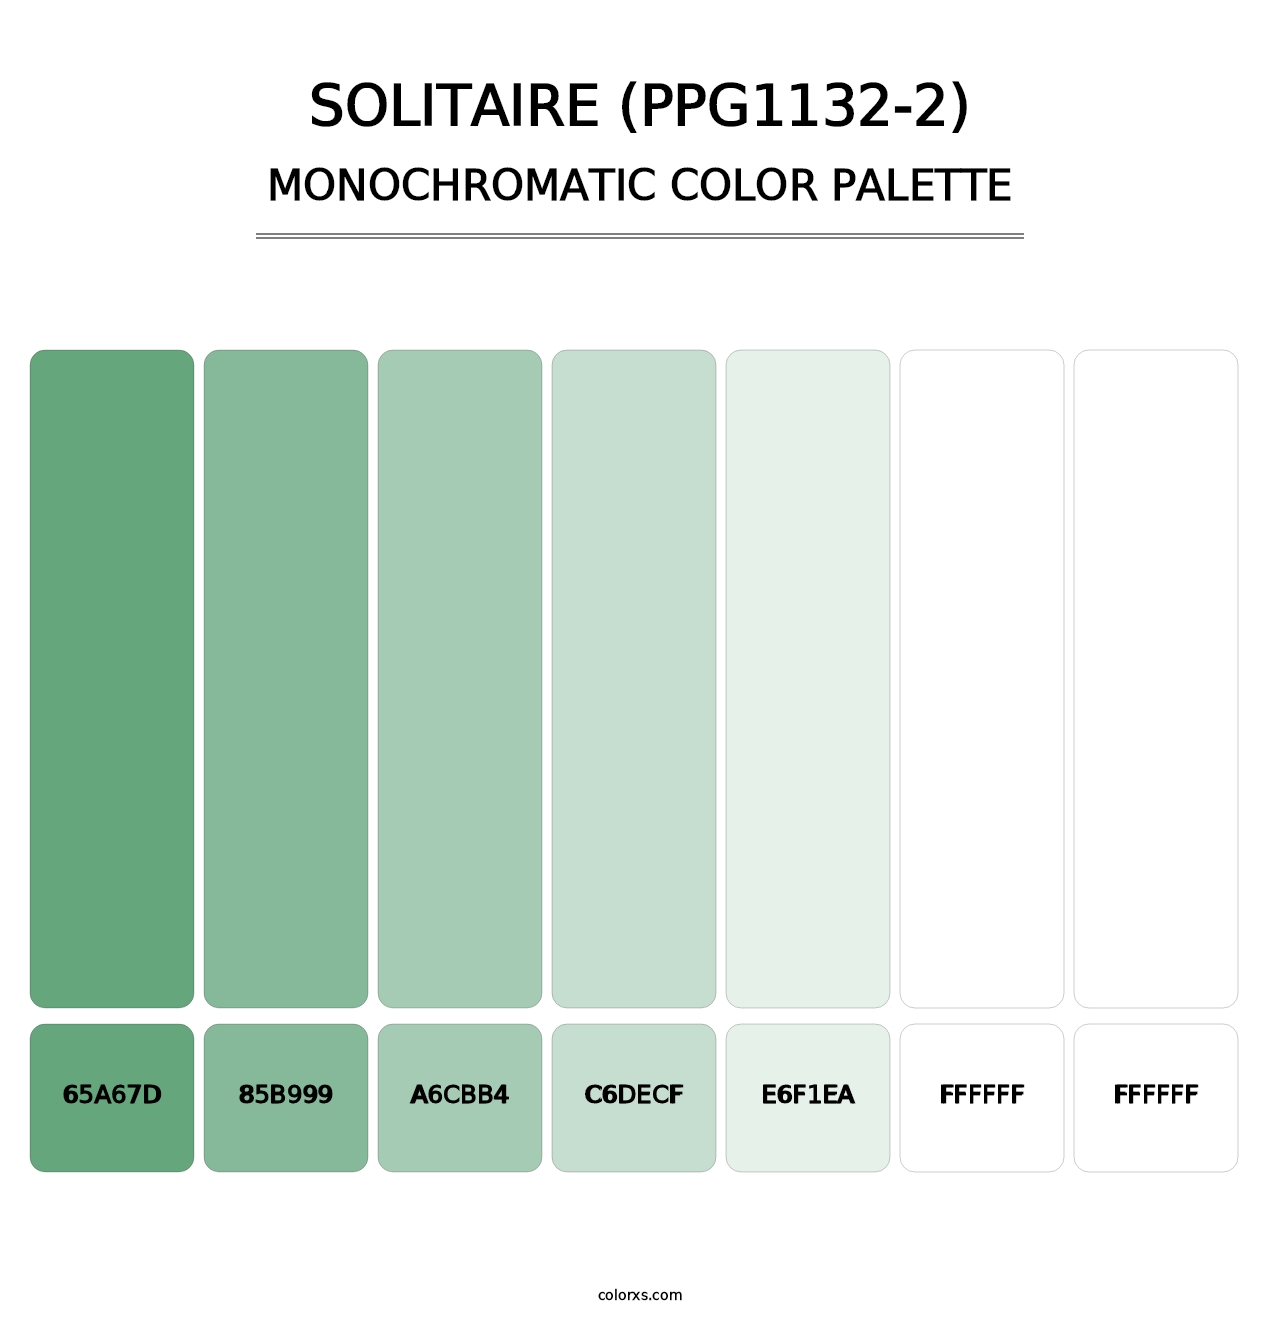 Solitaire (PPG1132-2) - Monochromatic Color Palette